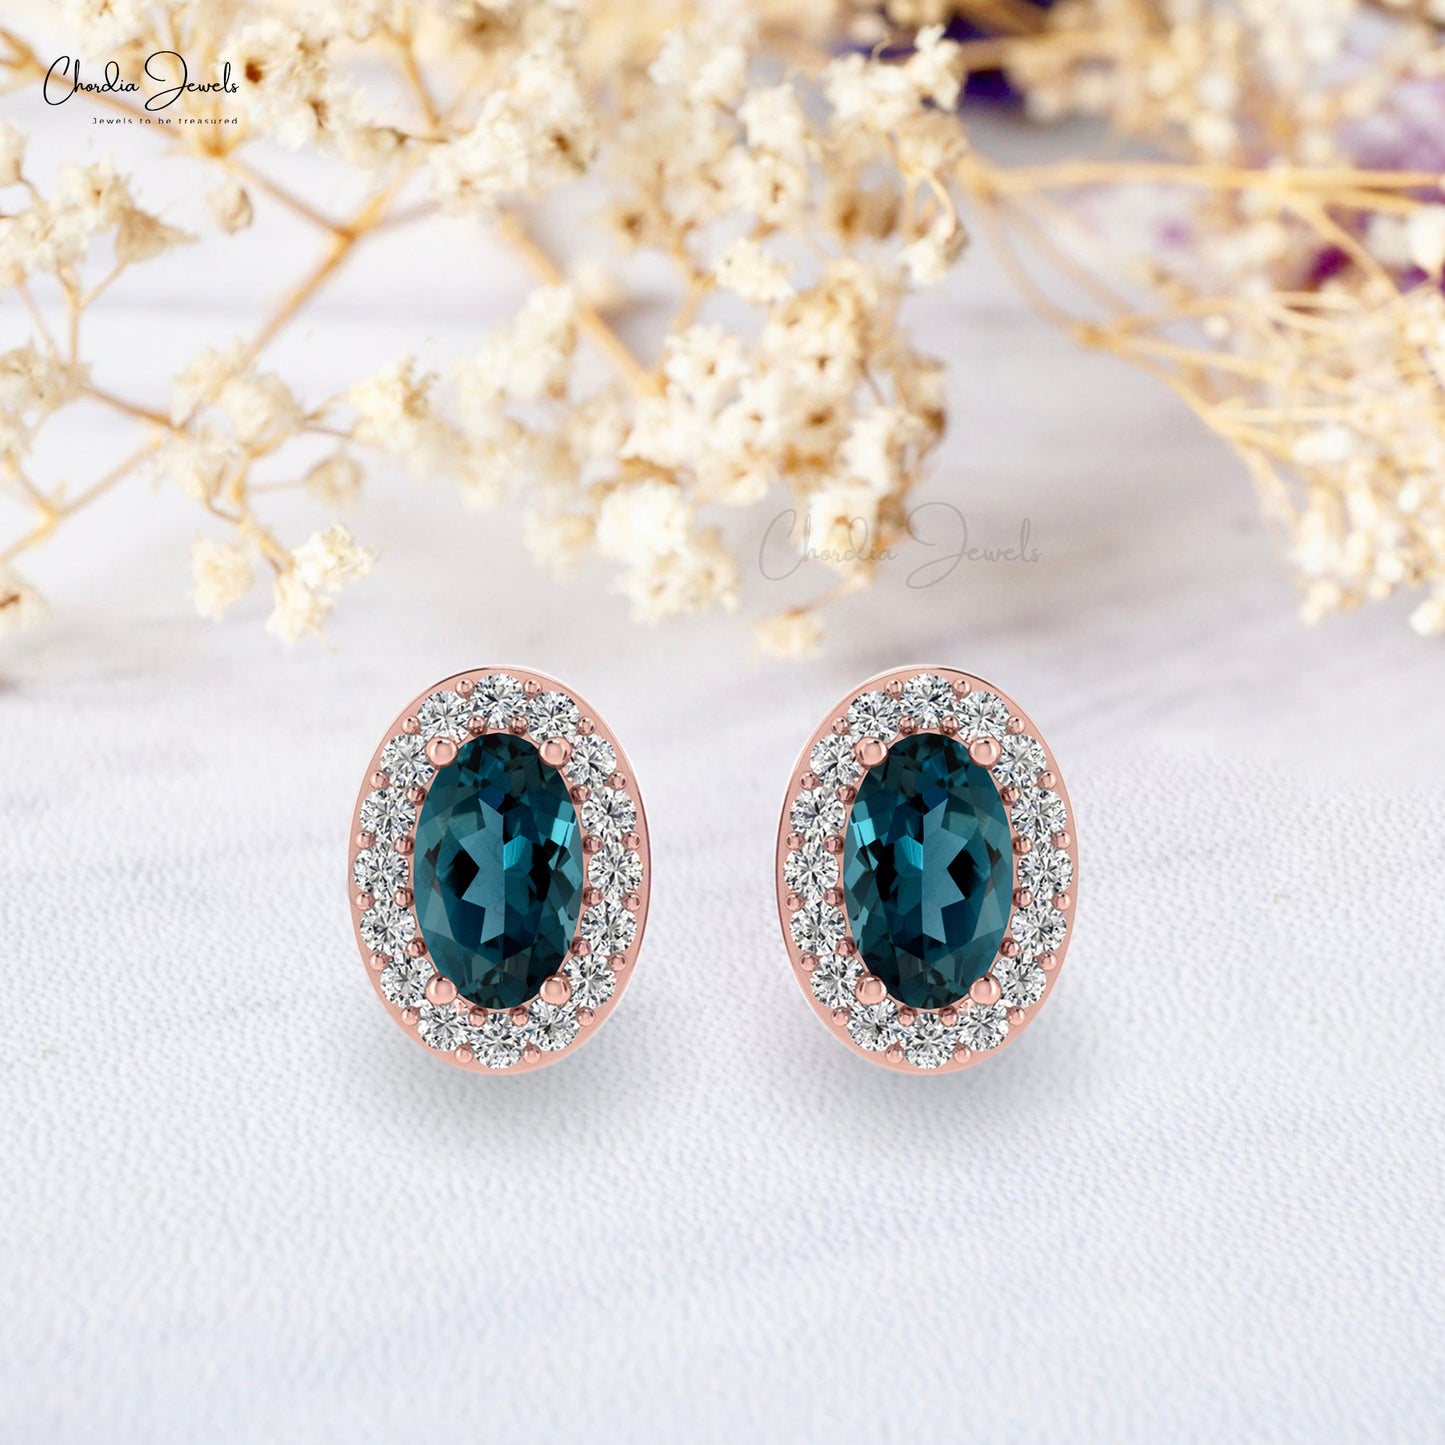 diamond & london topaz earrings